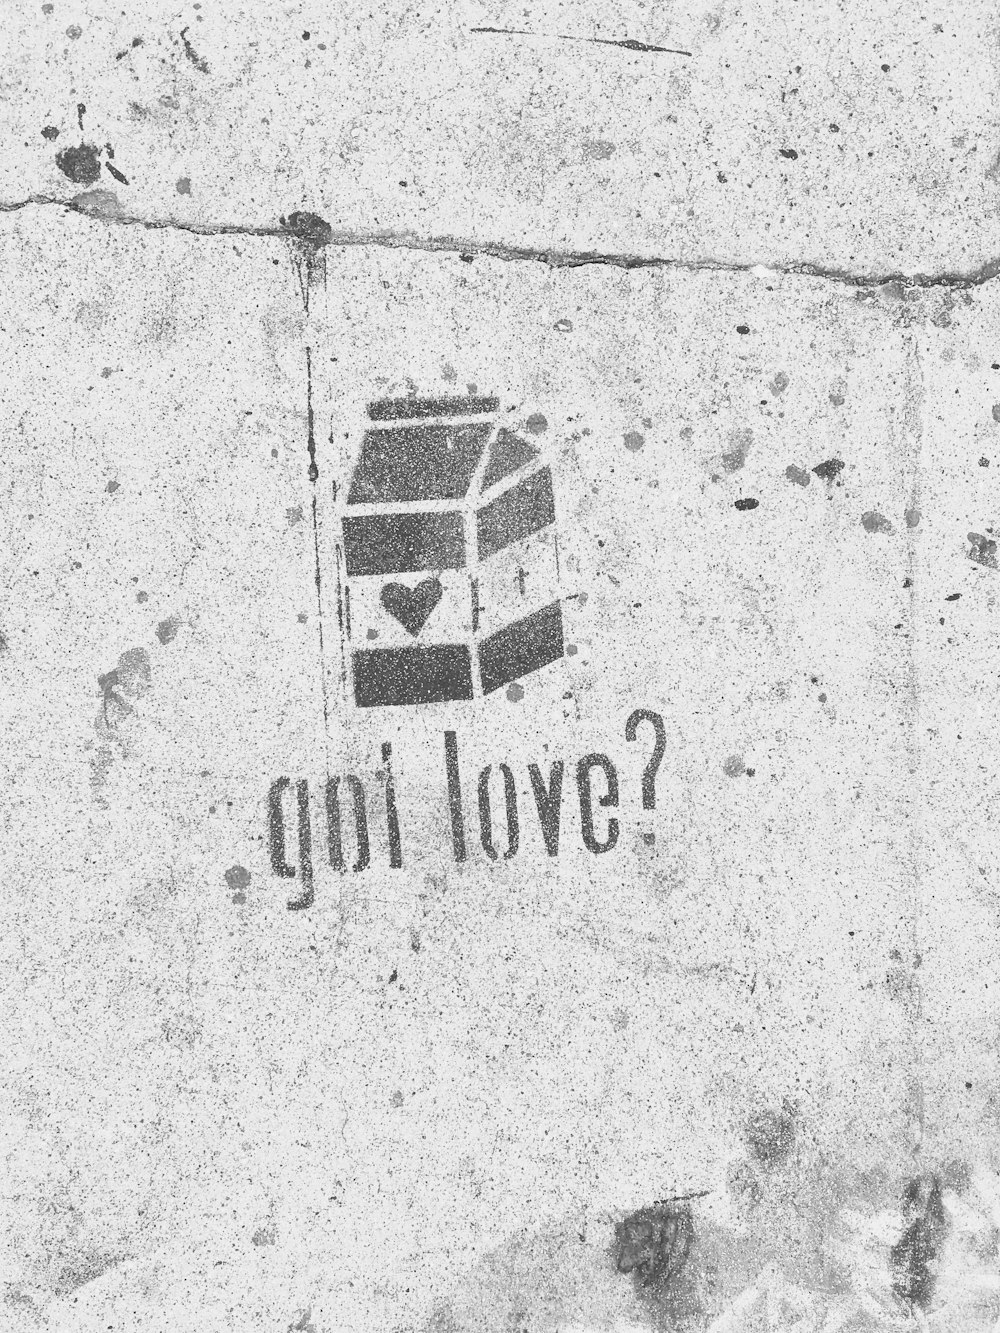 Hai l'amore? con graffiti di cartone del latte su muro di cemento